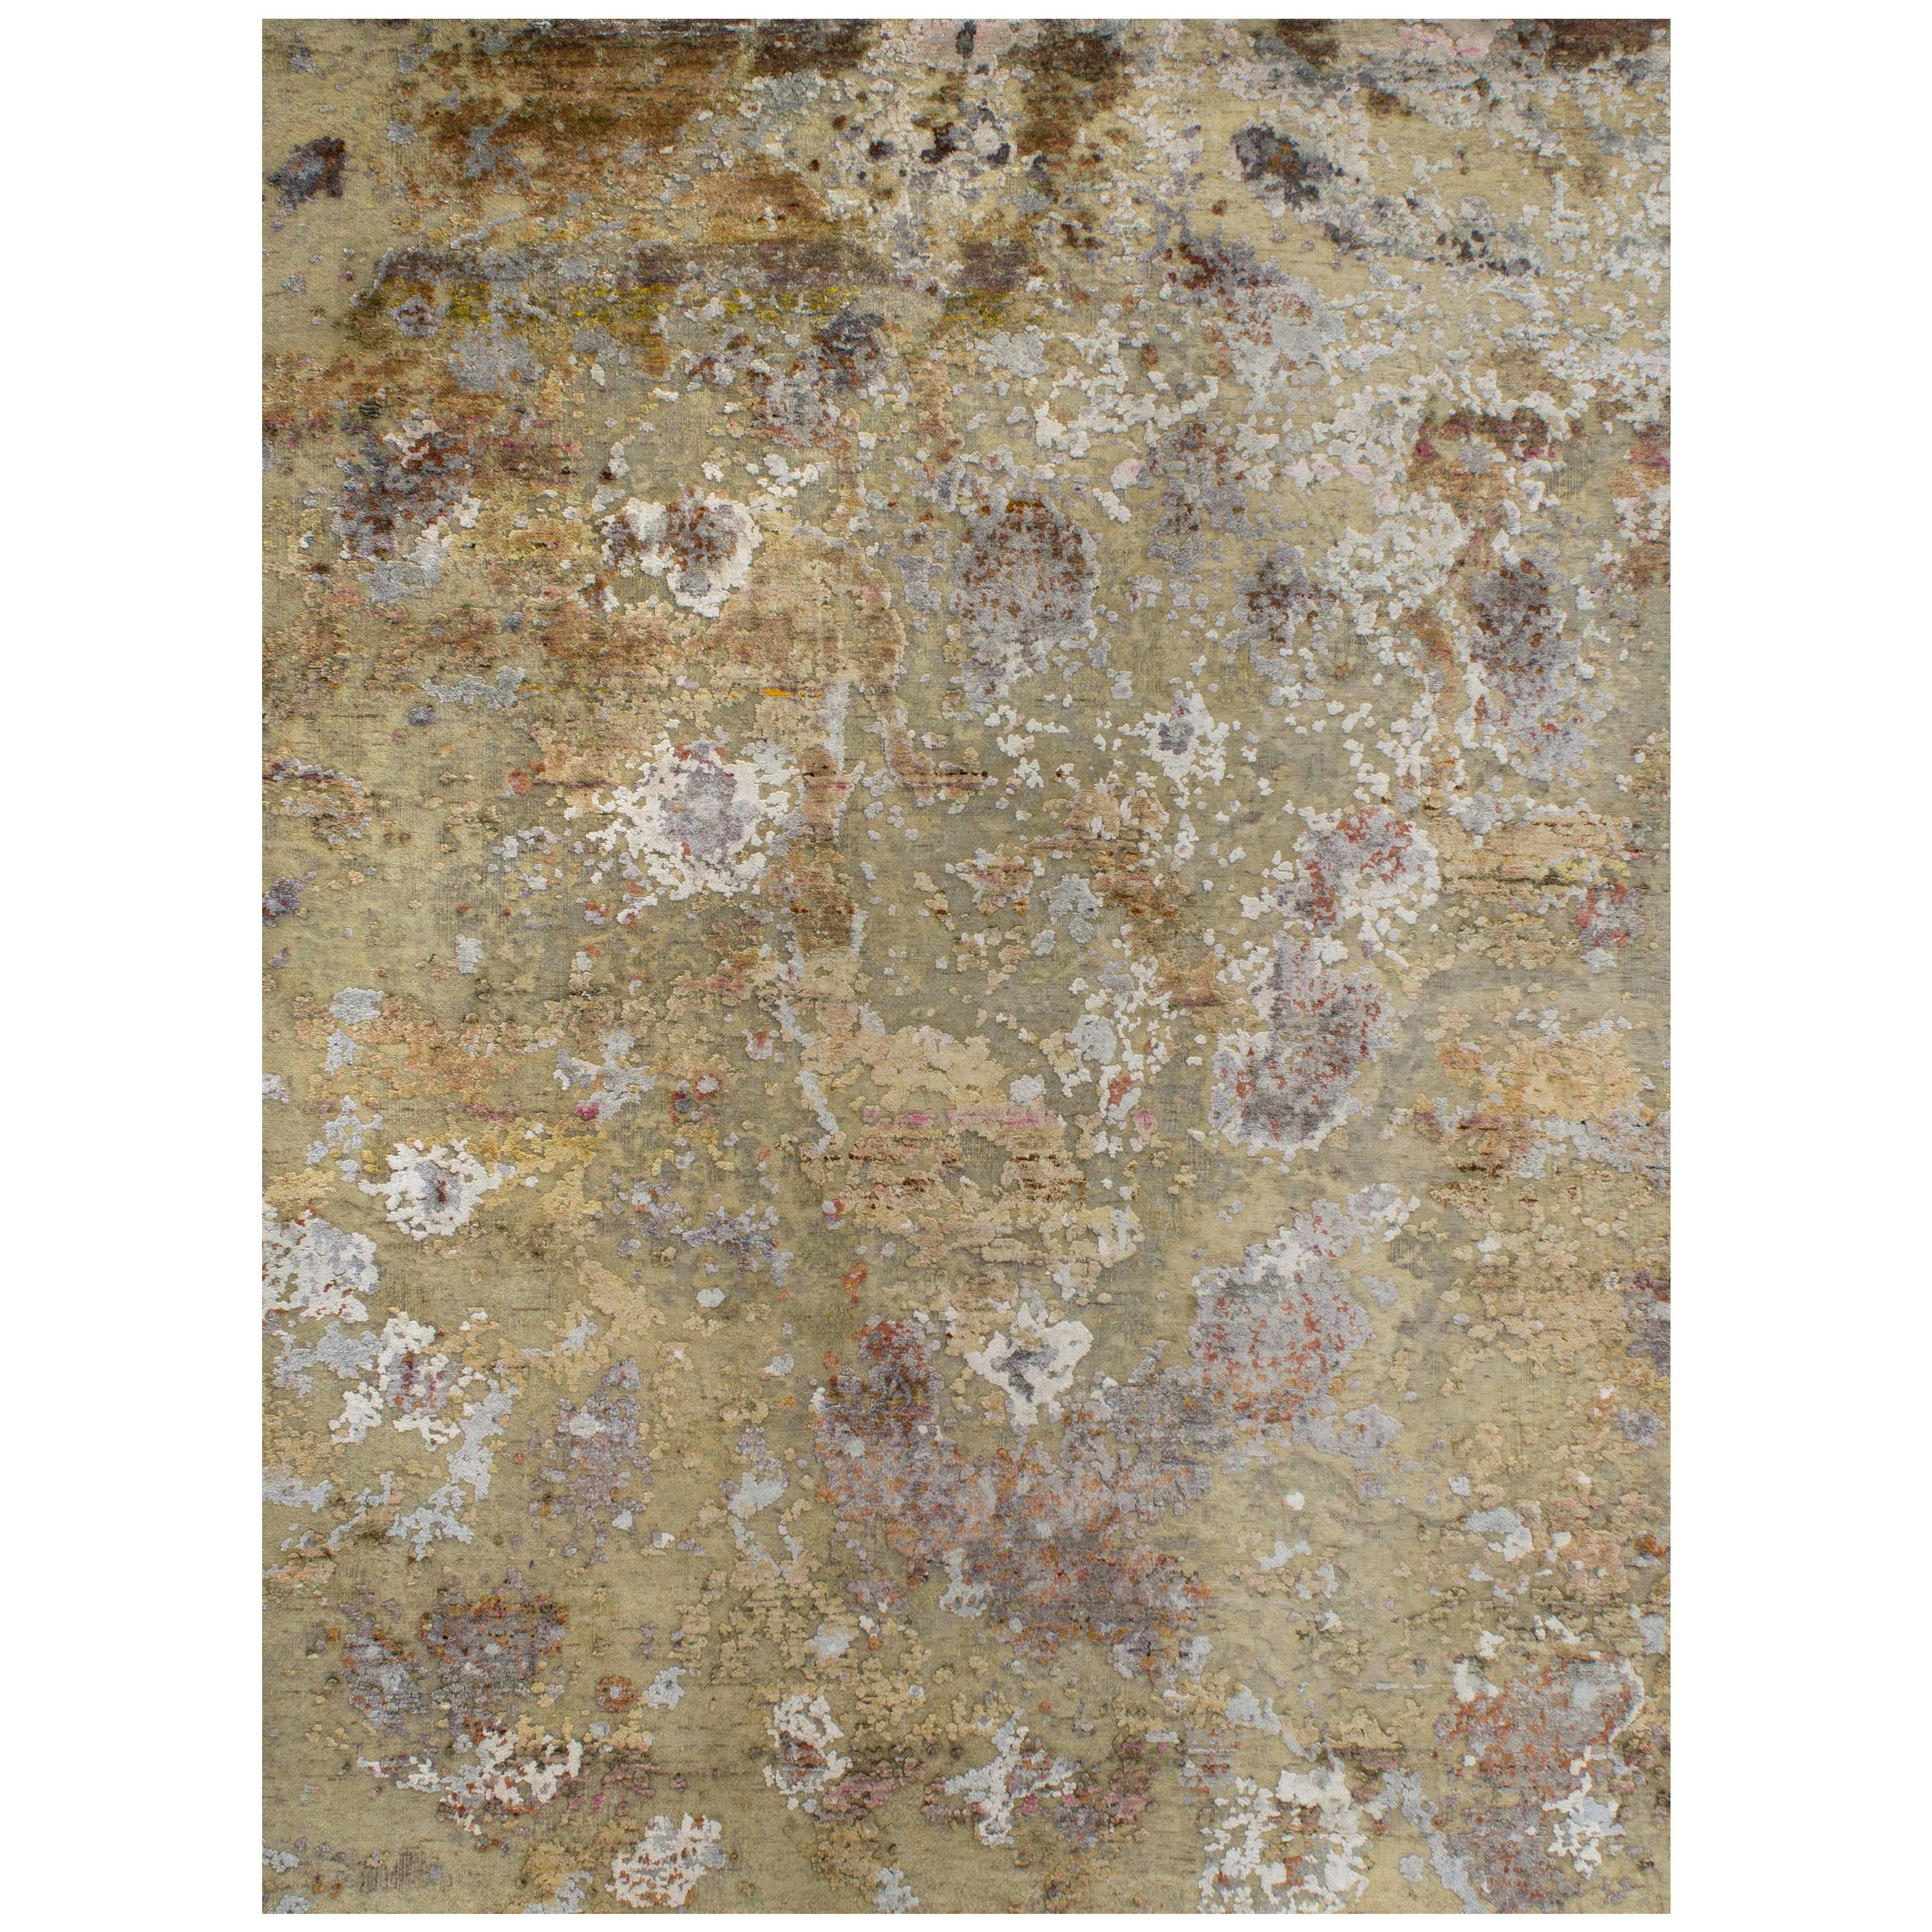 Moderner handgeknüpfter abstrakter Teppich aus Wolle und Seide in Gold, Beige, Pfirsich, Grau